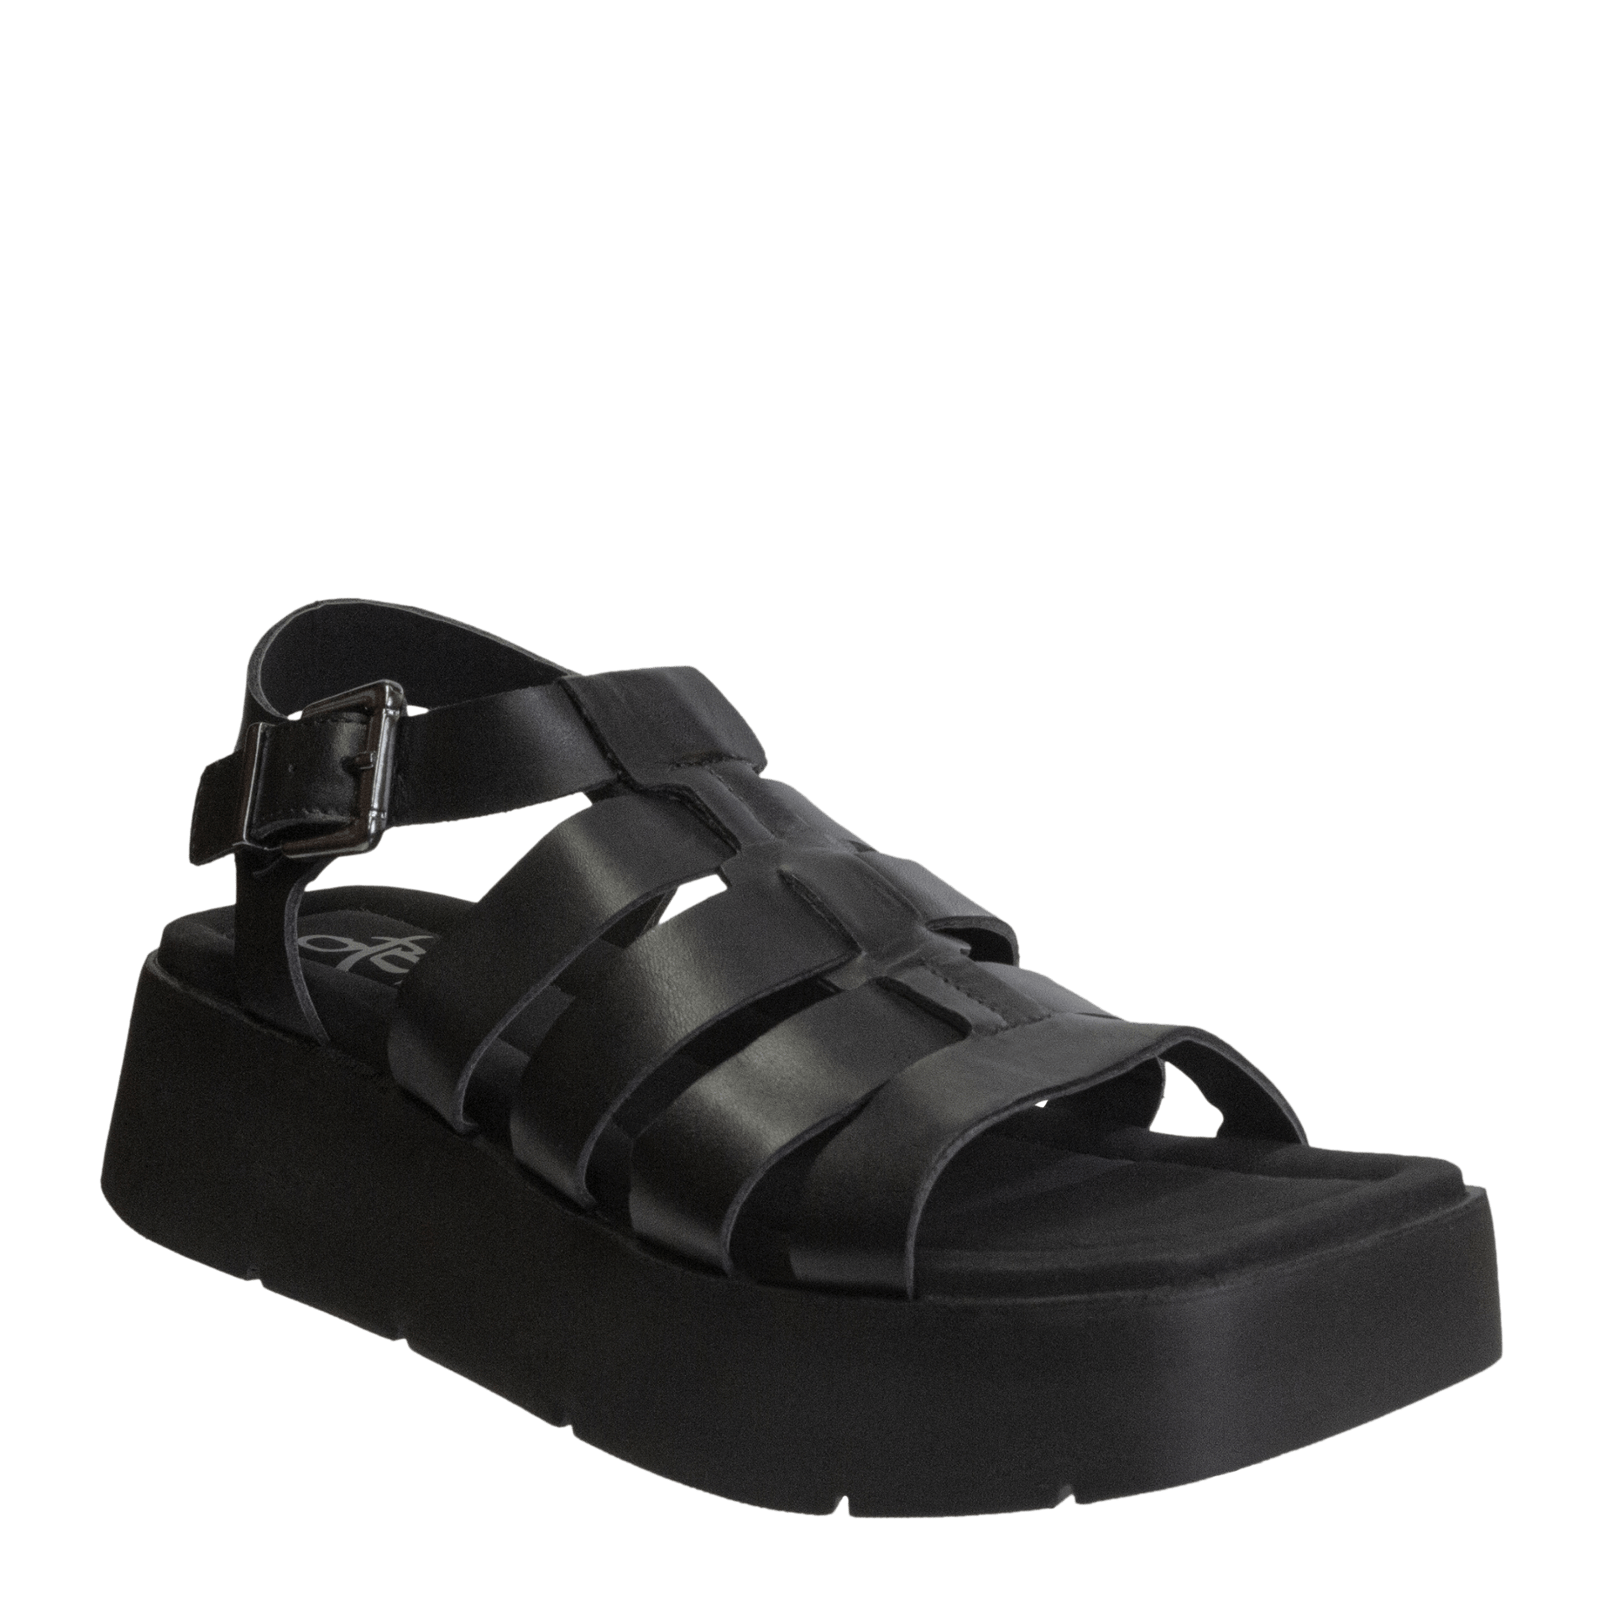 ARCHAIC in BLACK Platform Sandals